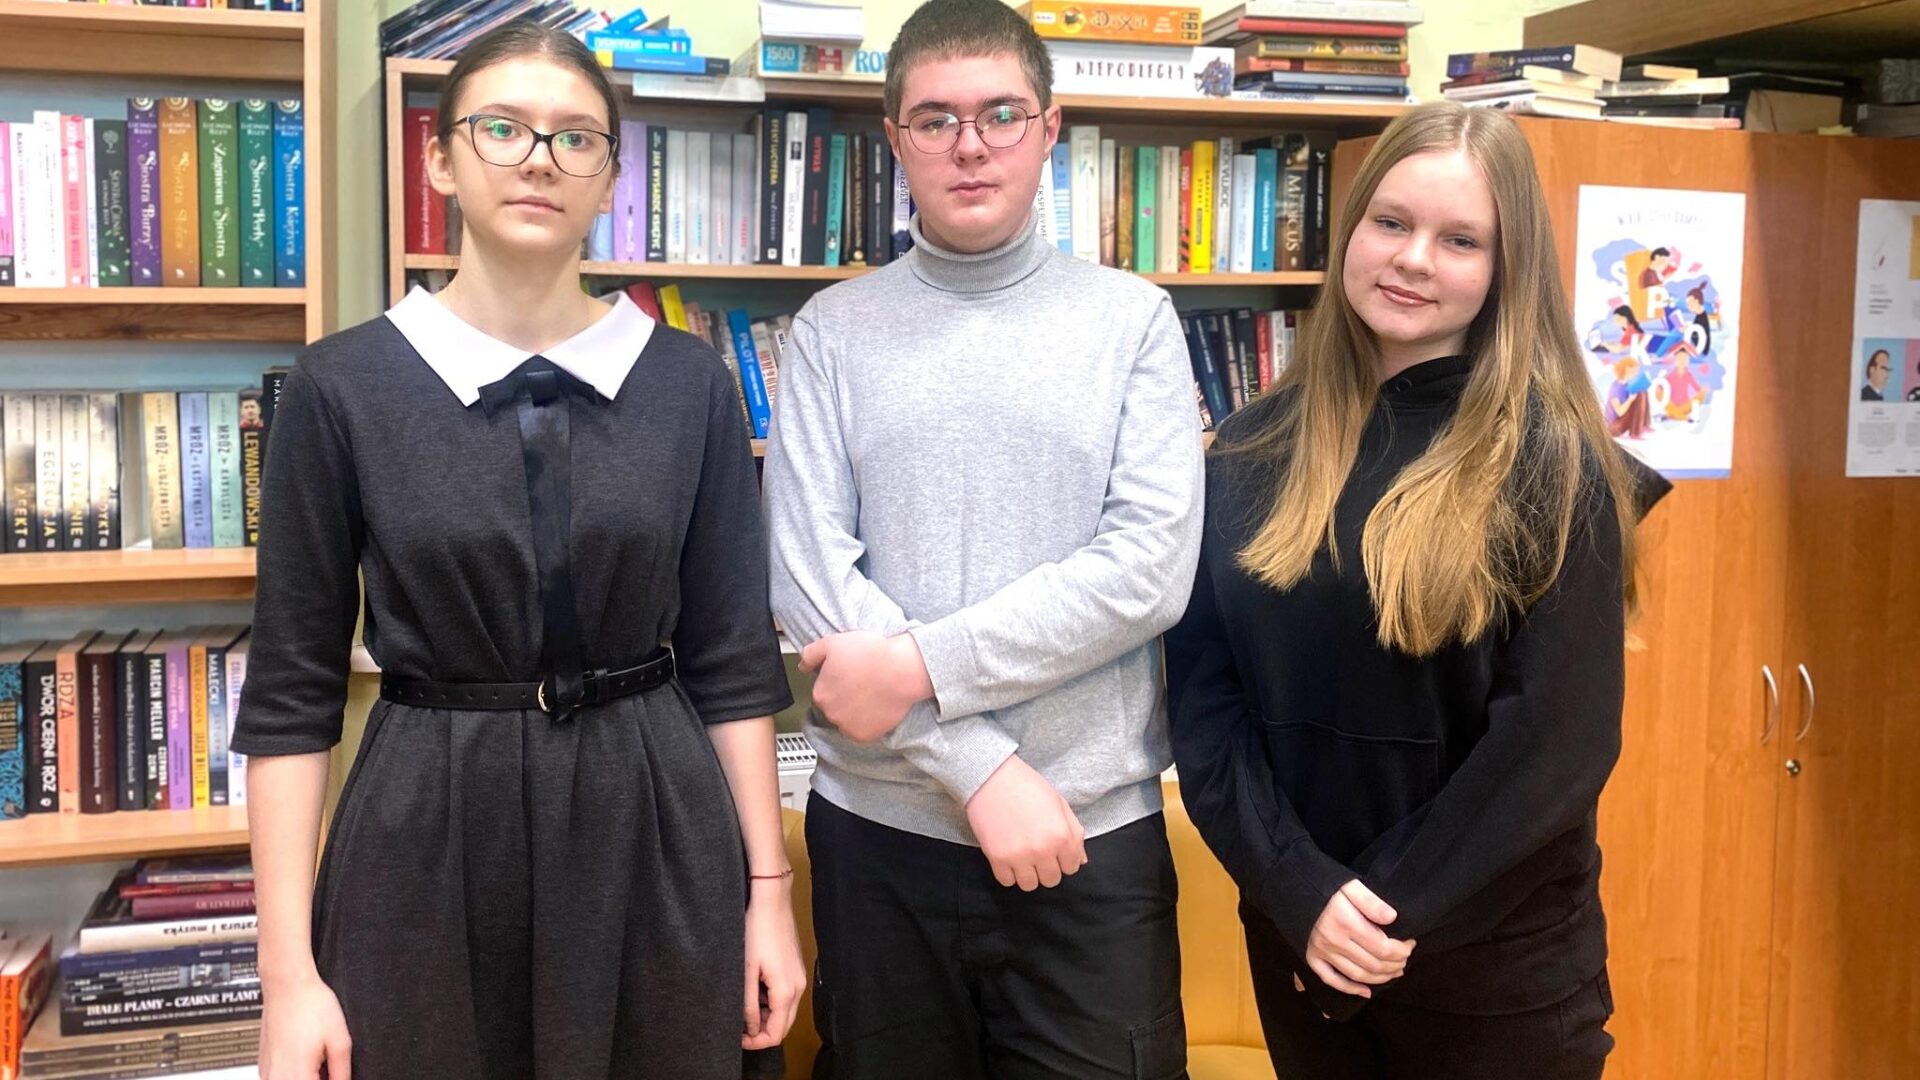 Na zdjęciu trójka uczniów, którzy zakwalifikowali się do finału konkursu biologicznego. Uczniowie stoją w szkolnej bibliotece na tle półek z książkami.